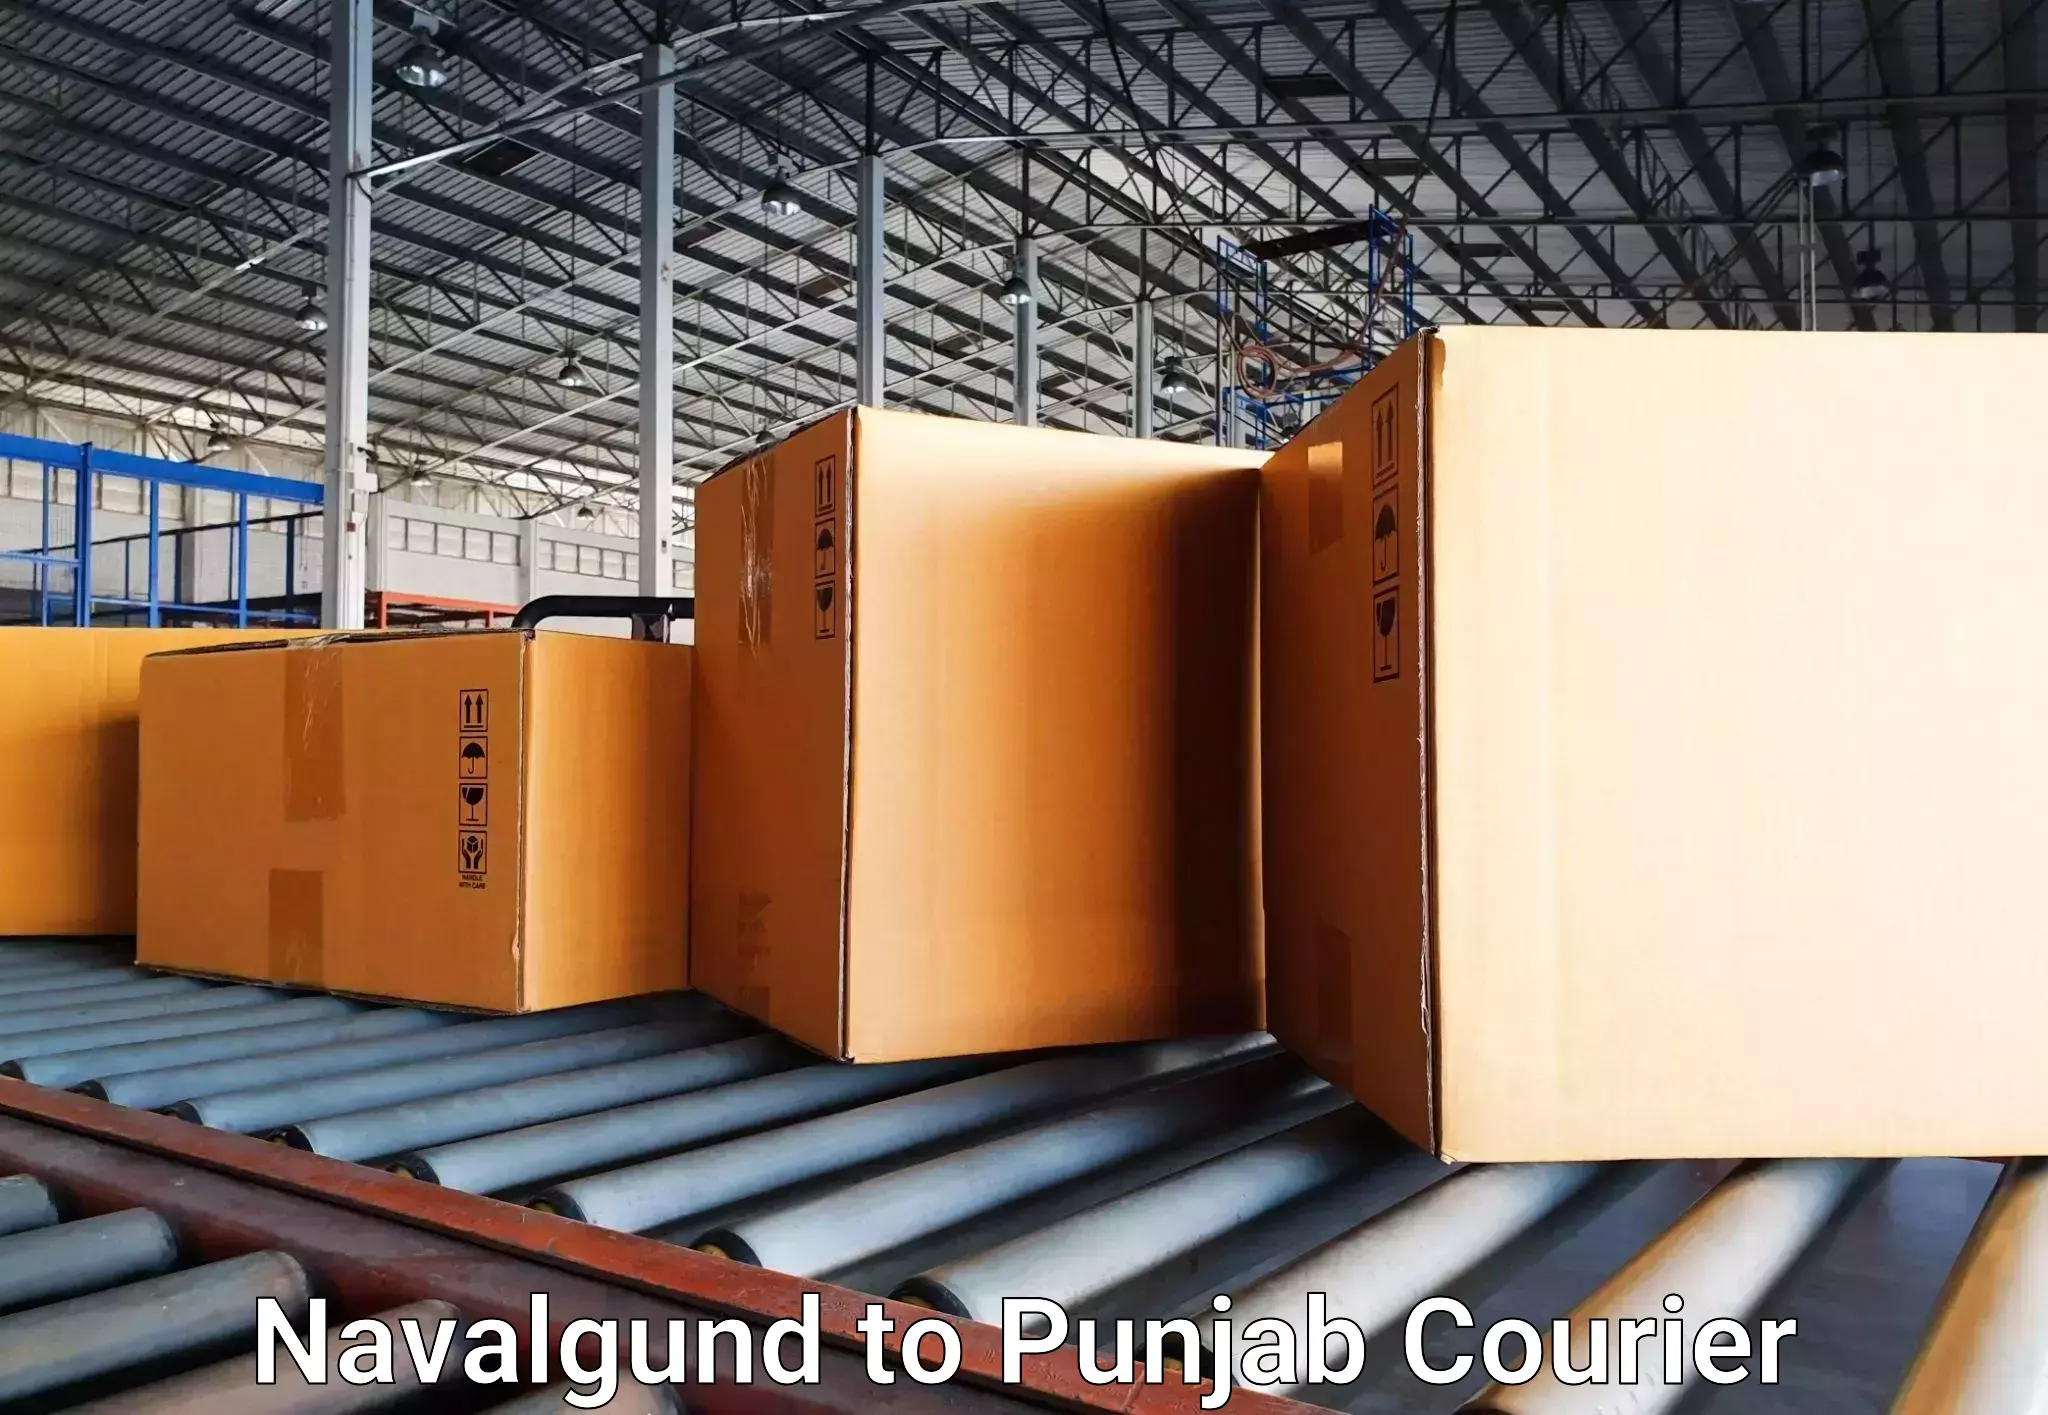 Baggage transport network Navalgund to Punjab